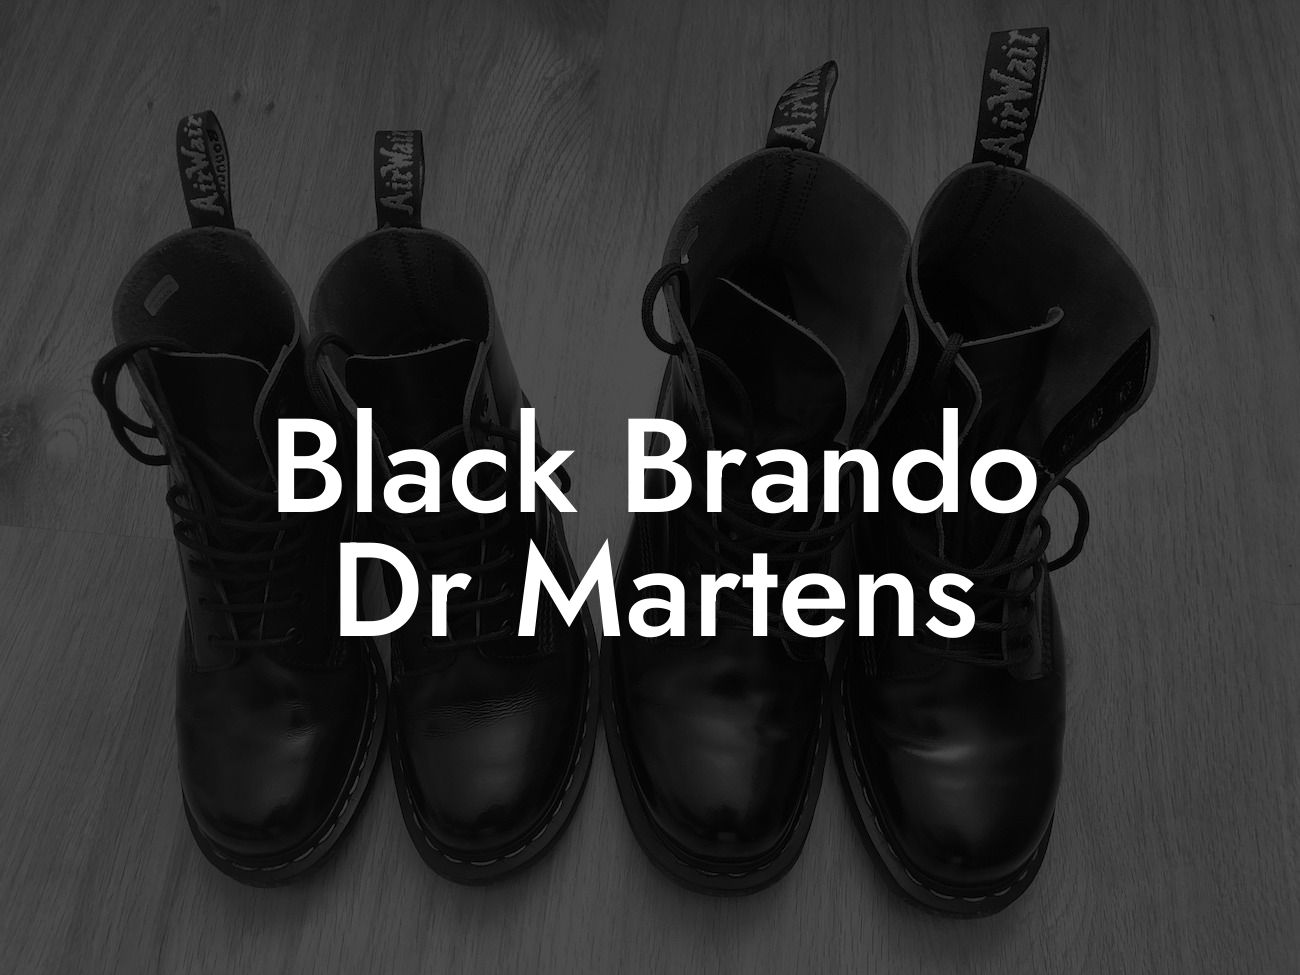 Black Brando Dr Martens